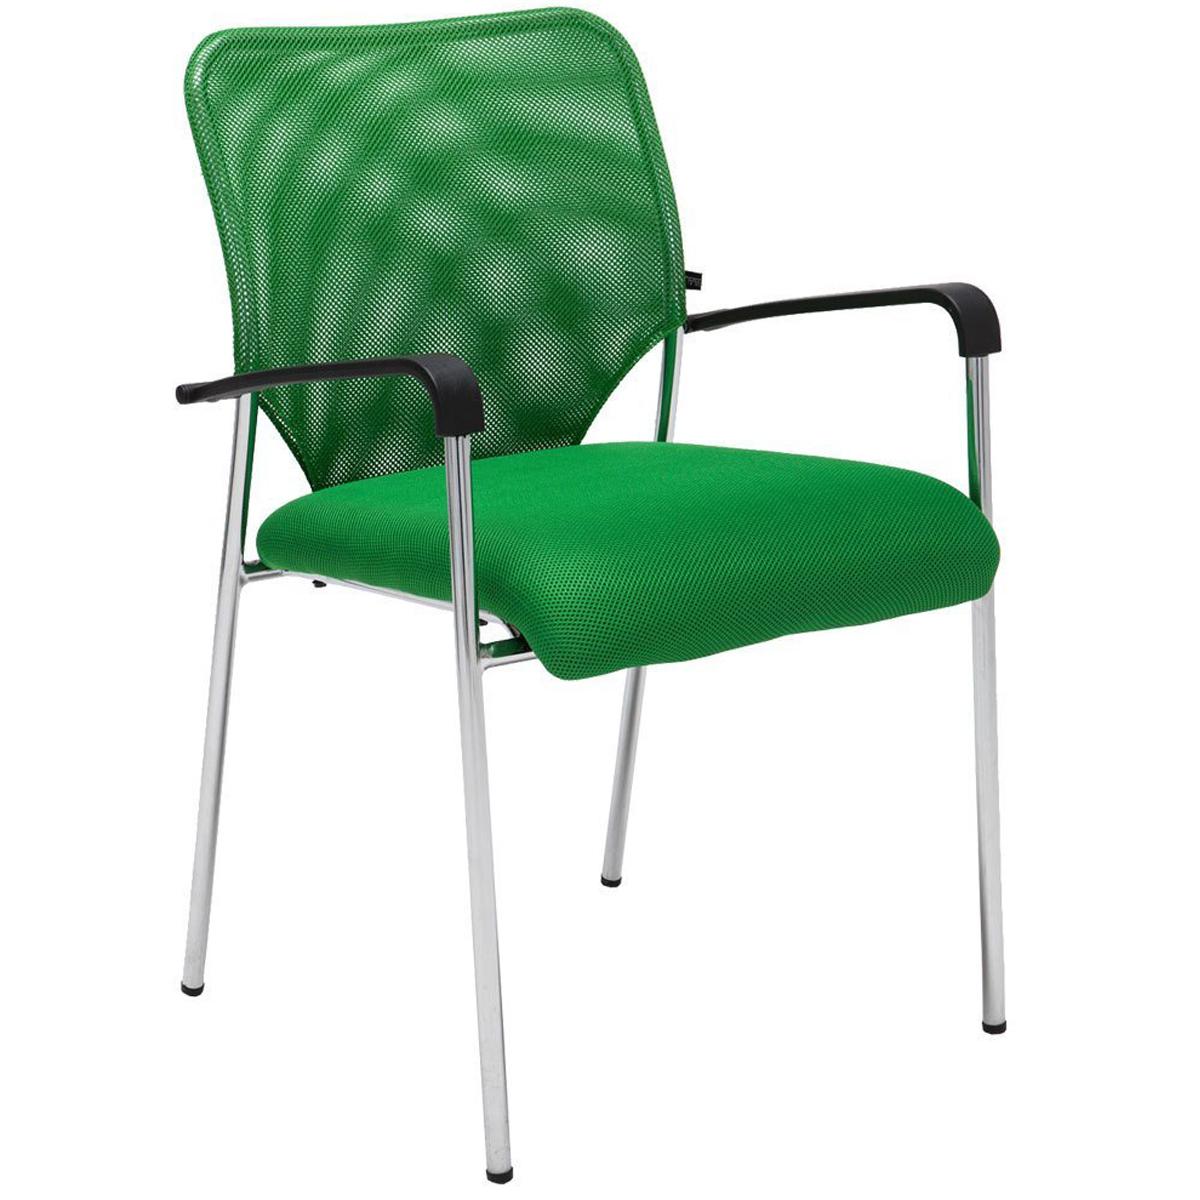 Konferenzstuhl JAMAIKA, robust und sehr bequem, atmungsaktiver Netzstoff, Farbe Grün